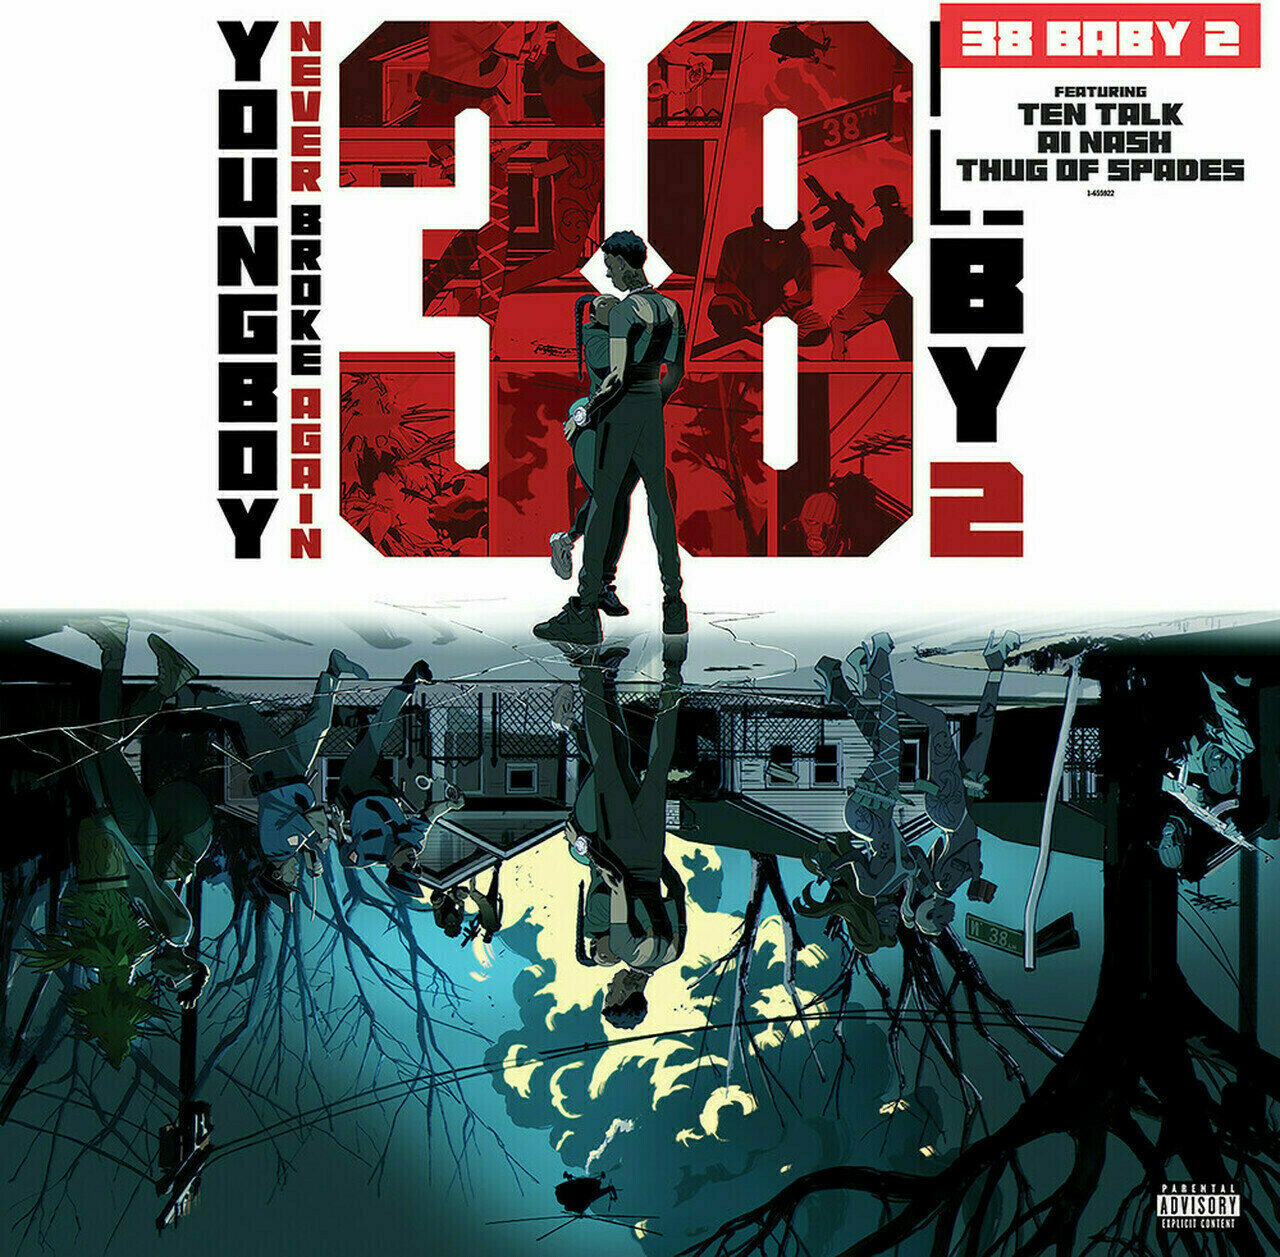 Hanglemez Youngboy Never Broke Again - 38 Baby 2 (LP)